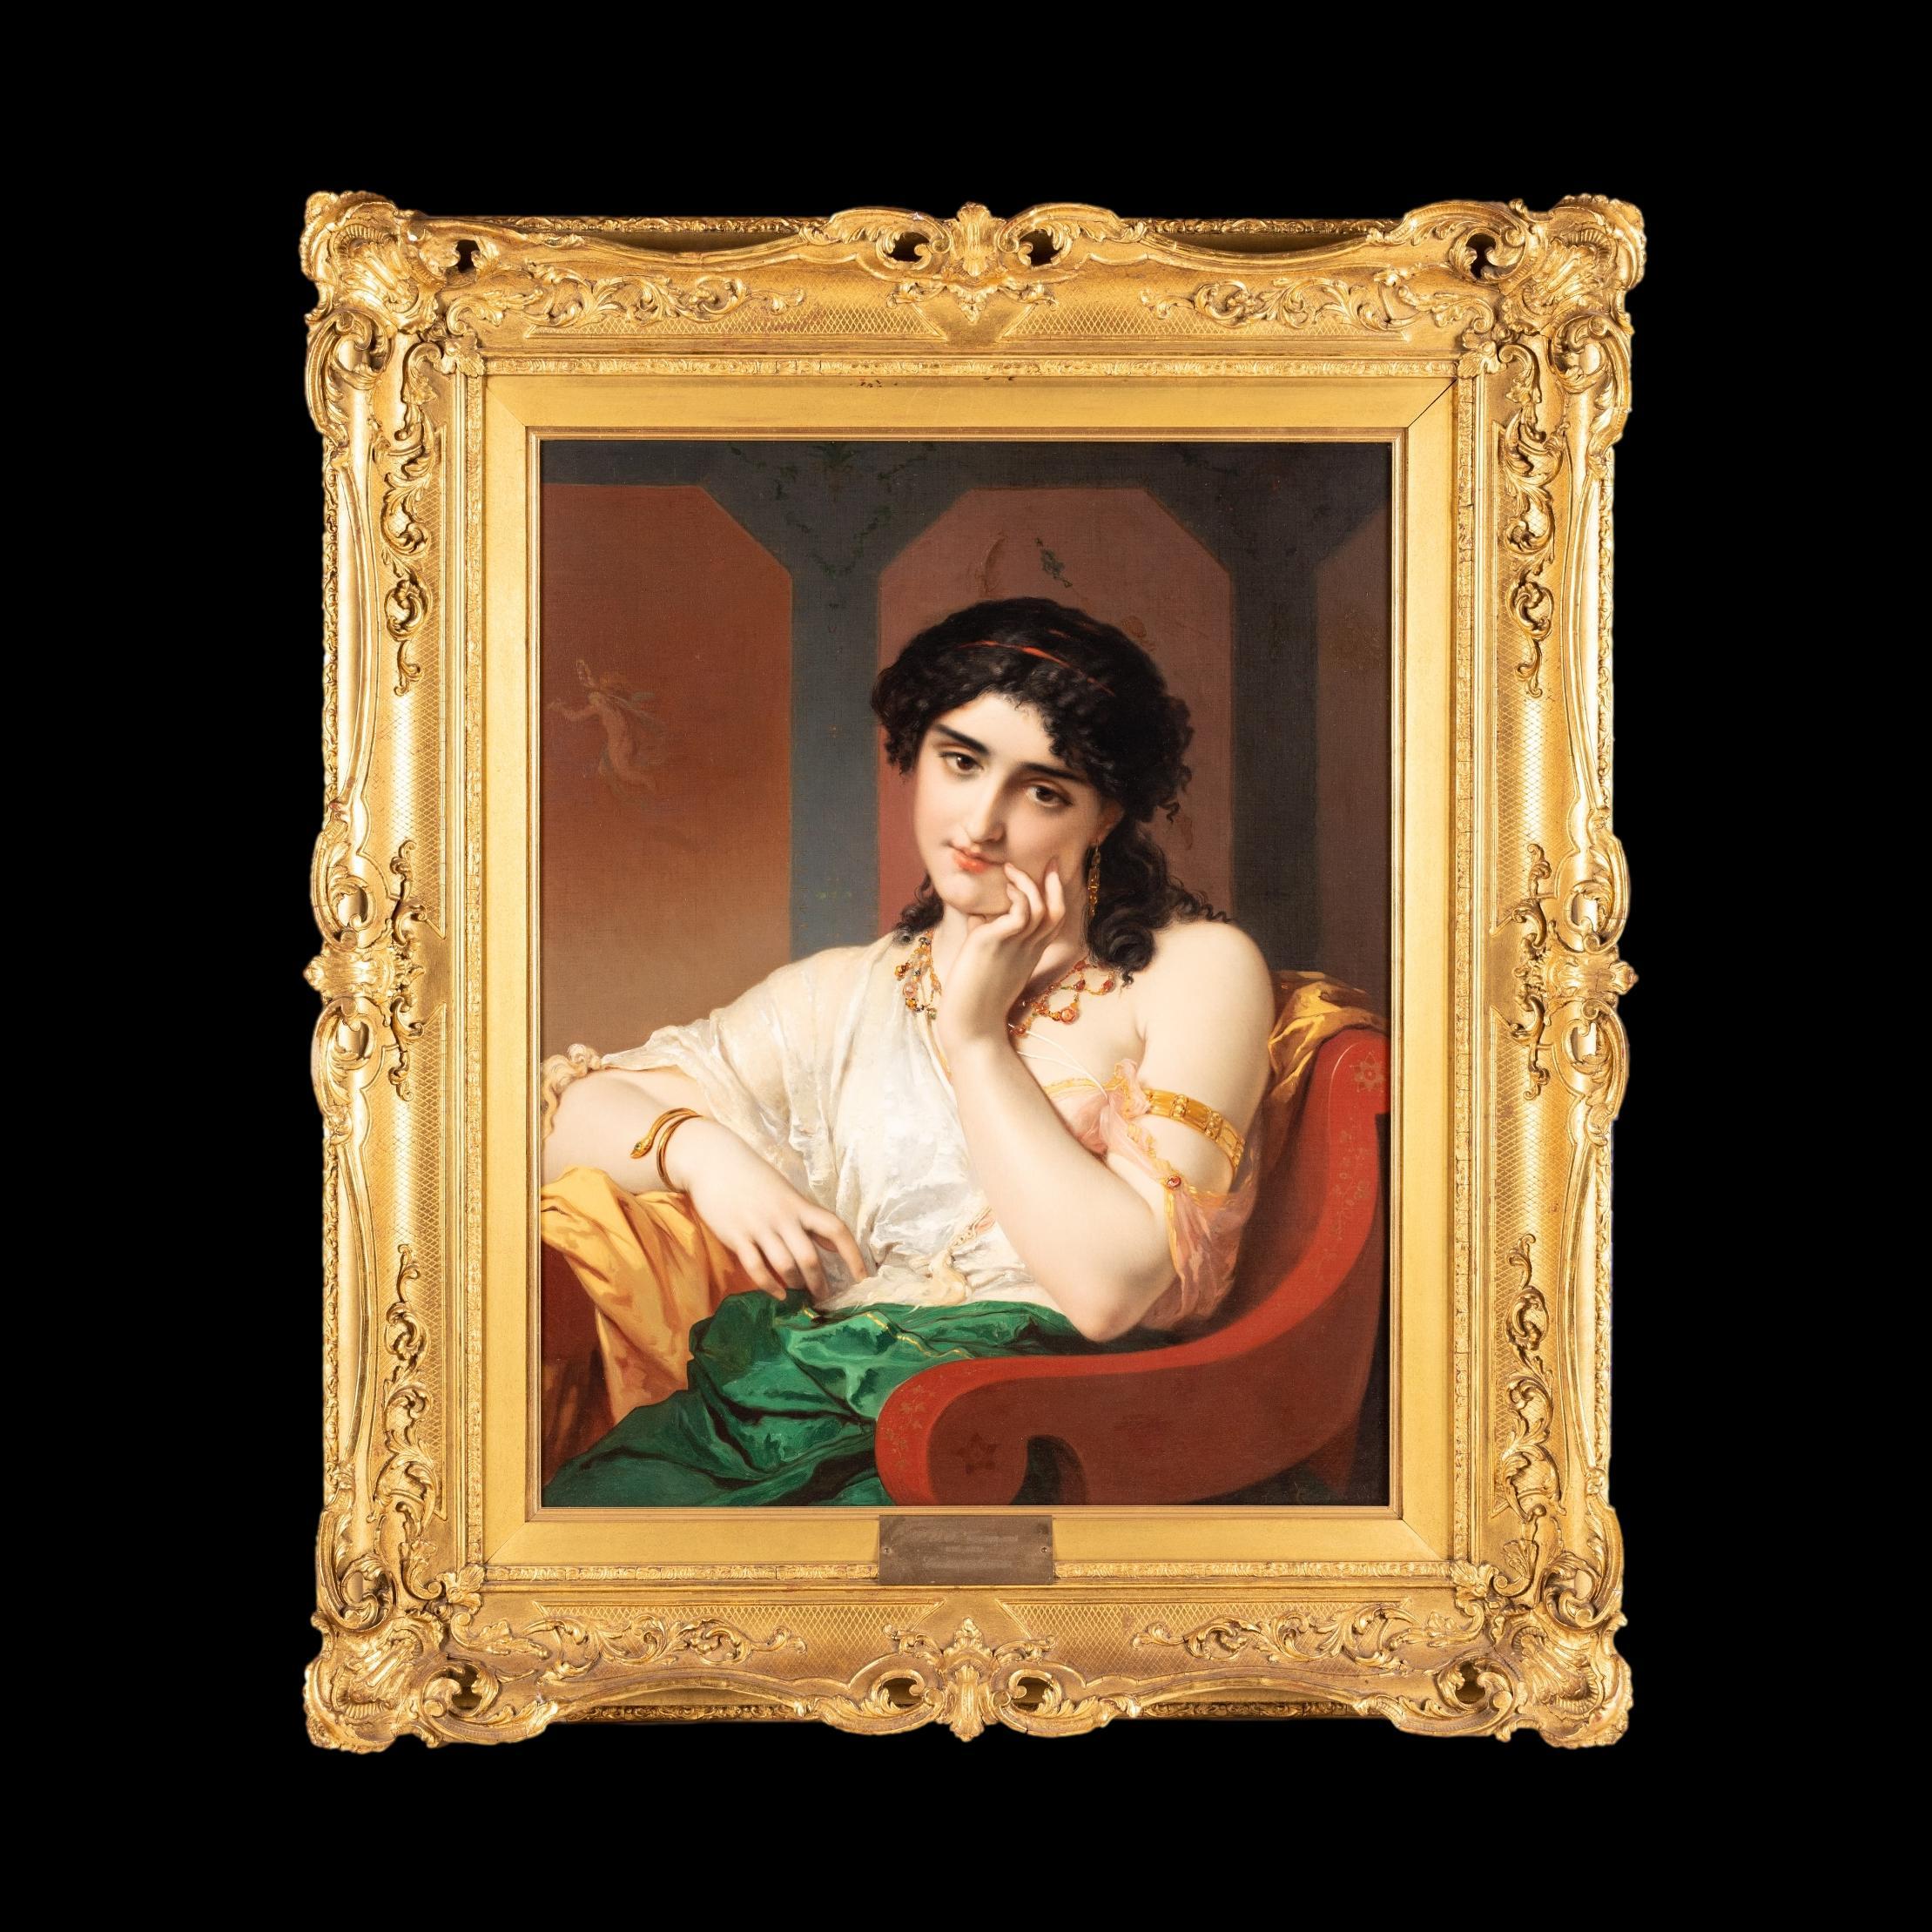 Schönheit Daydreaming
von Joseph Pierre Olivier Coomans (1816-1889)

Das Werk in Öl auf Leinwand zeigt eine klassische Schönheit, die in einem lackierten Stuhl sitzend nachdenkt, während sie reiche Stoffe und glitzernden Schmuck trägt. Signiert